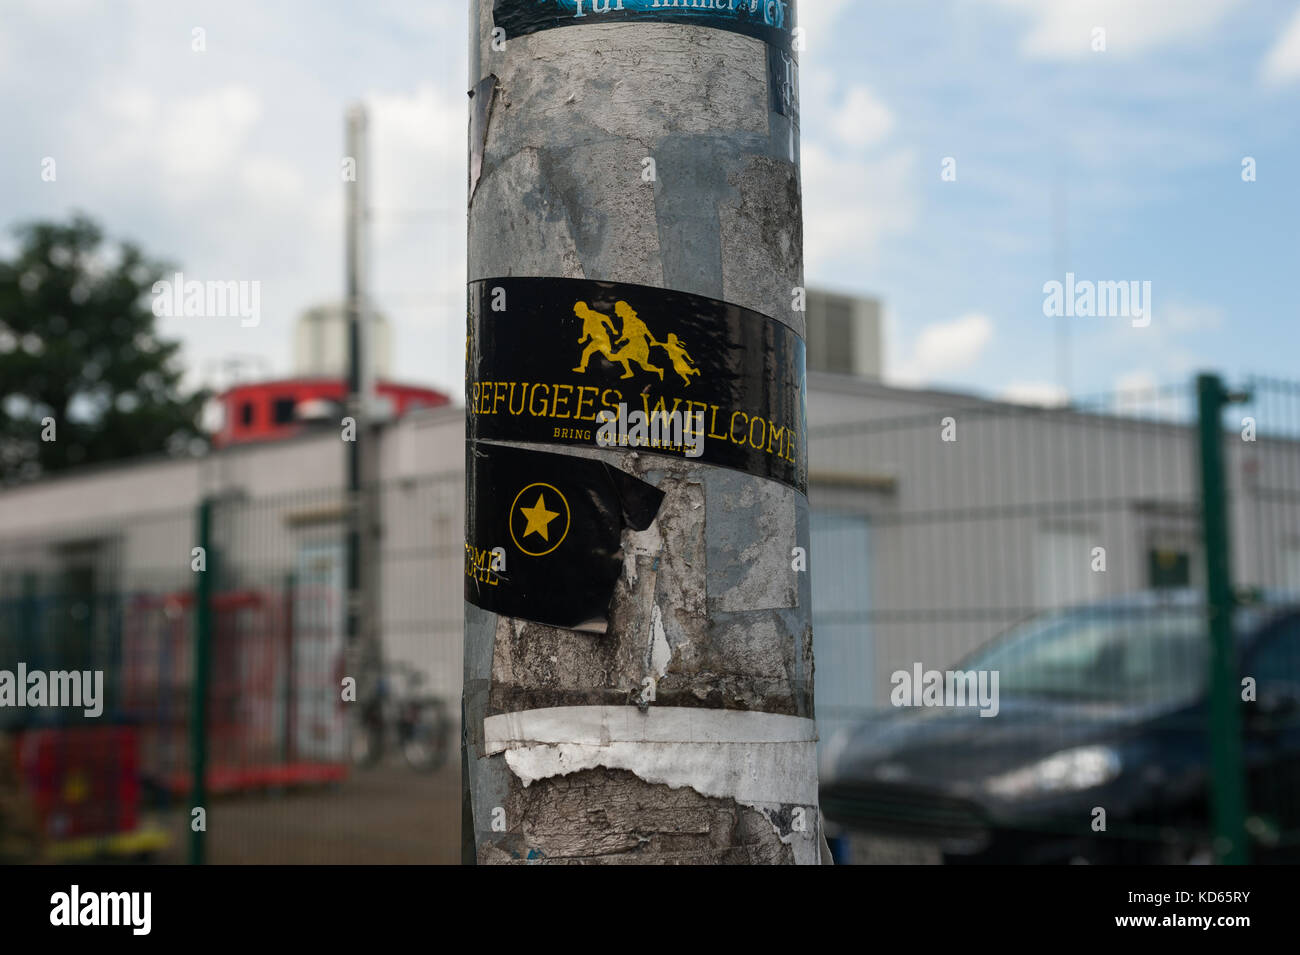 10.06.2017, Brandeburgo, Germania, Europa - un adesivo con lo slogan "rifugiati benvenuti' è visto in un'autostrada area di servizio nel Land di Brandeburgo. Foto Stock